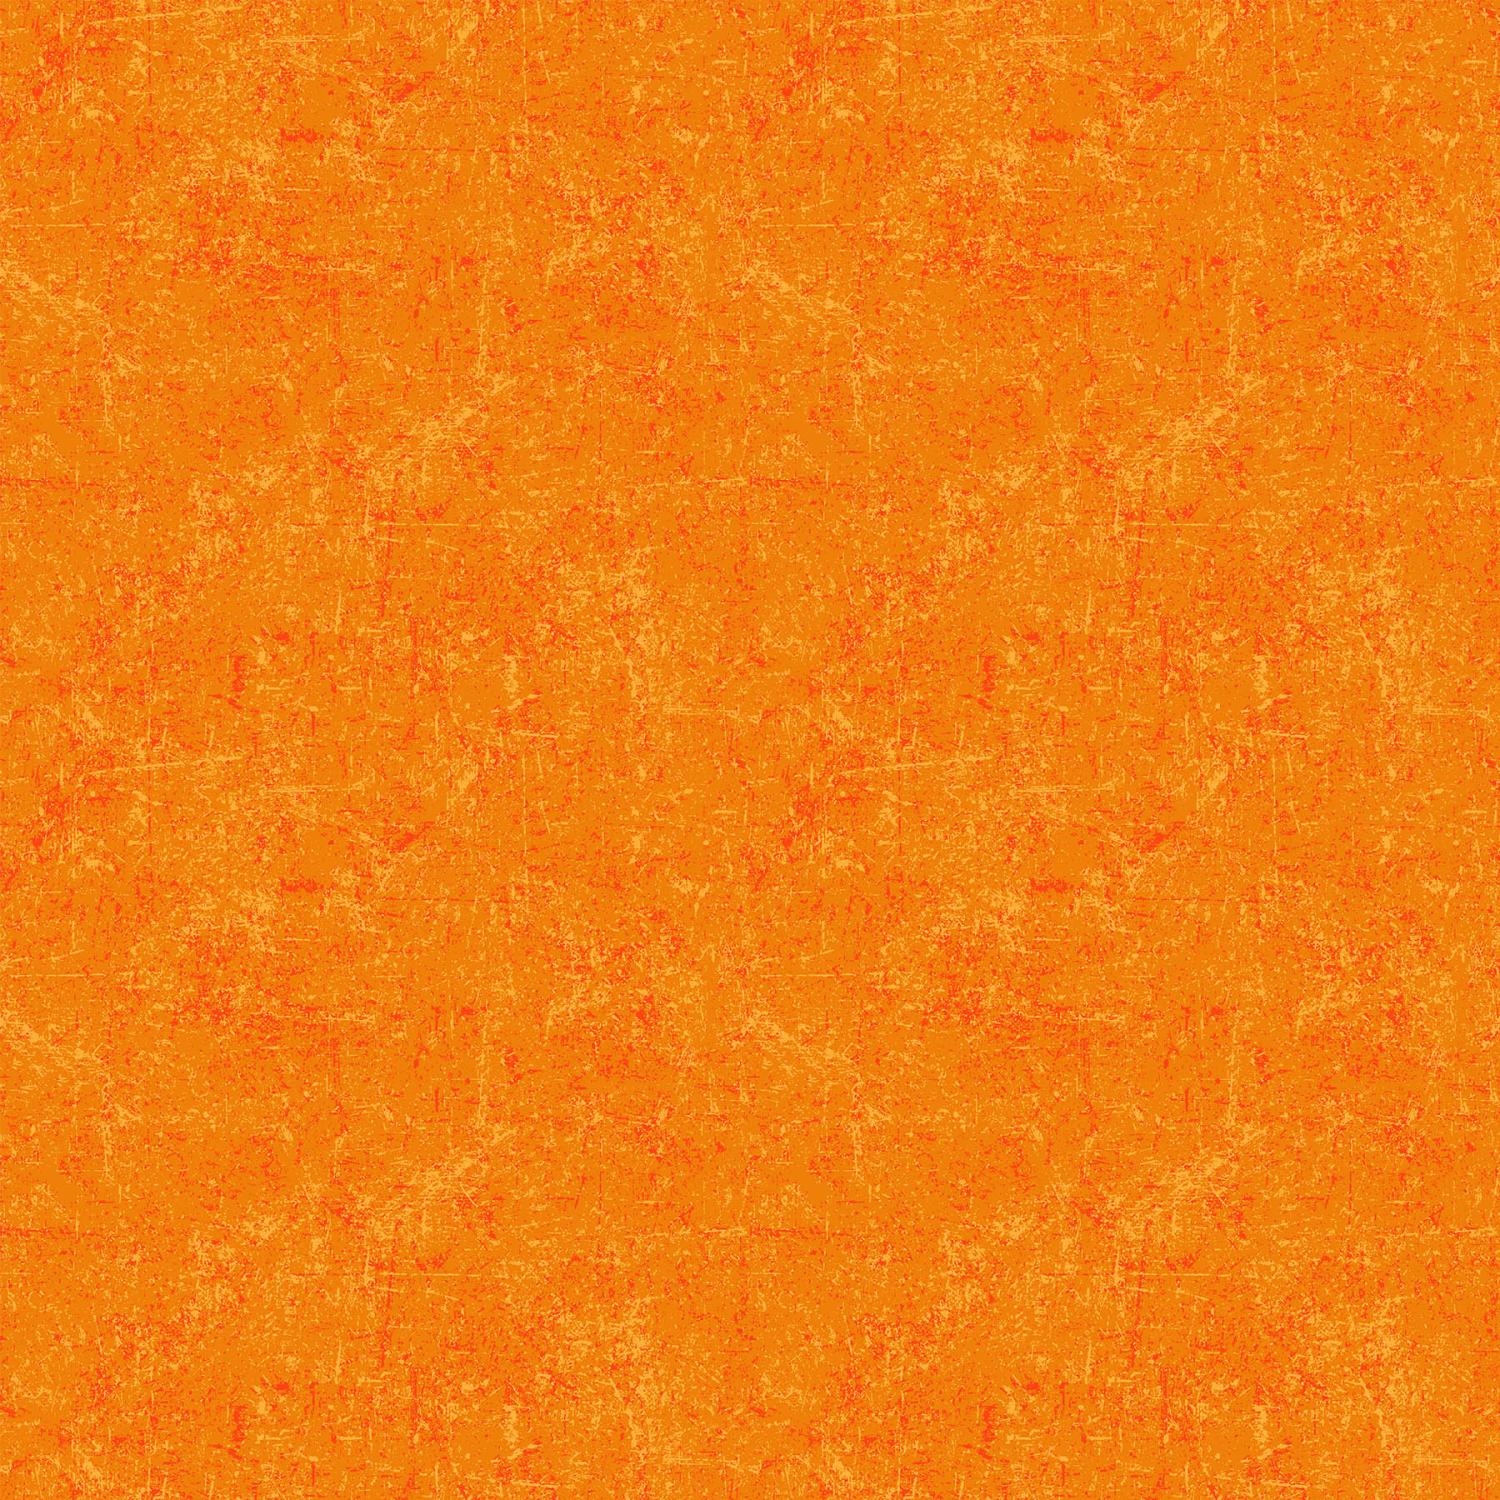 Glisten Tangerine